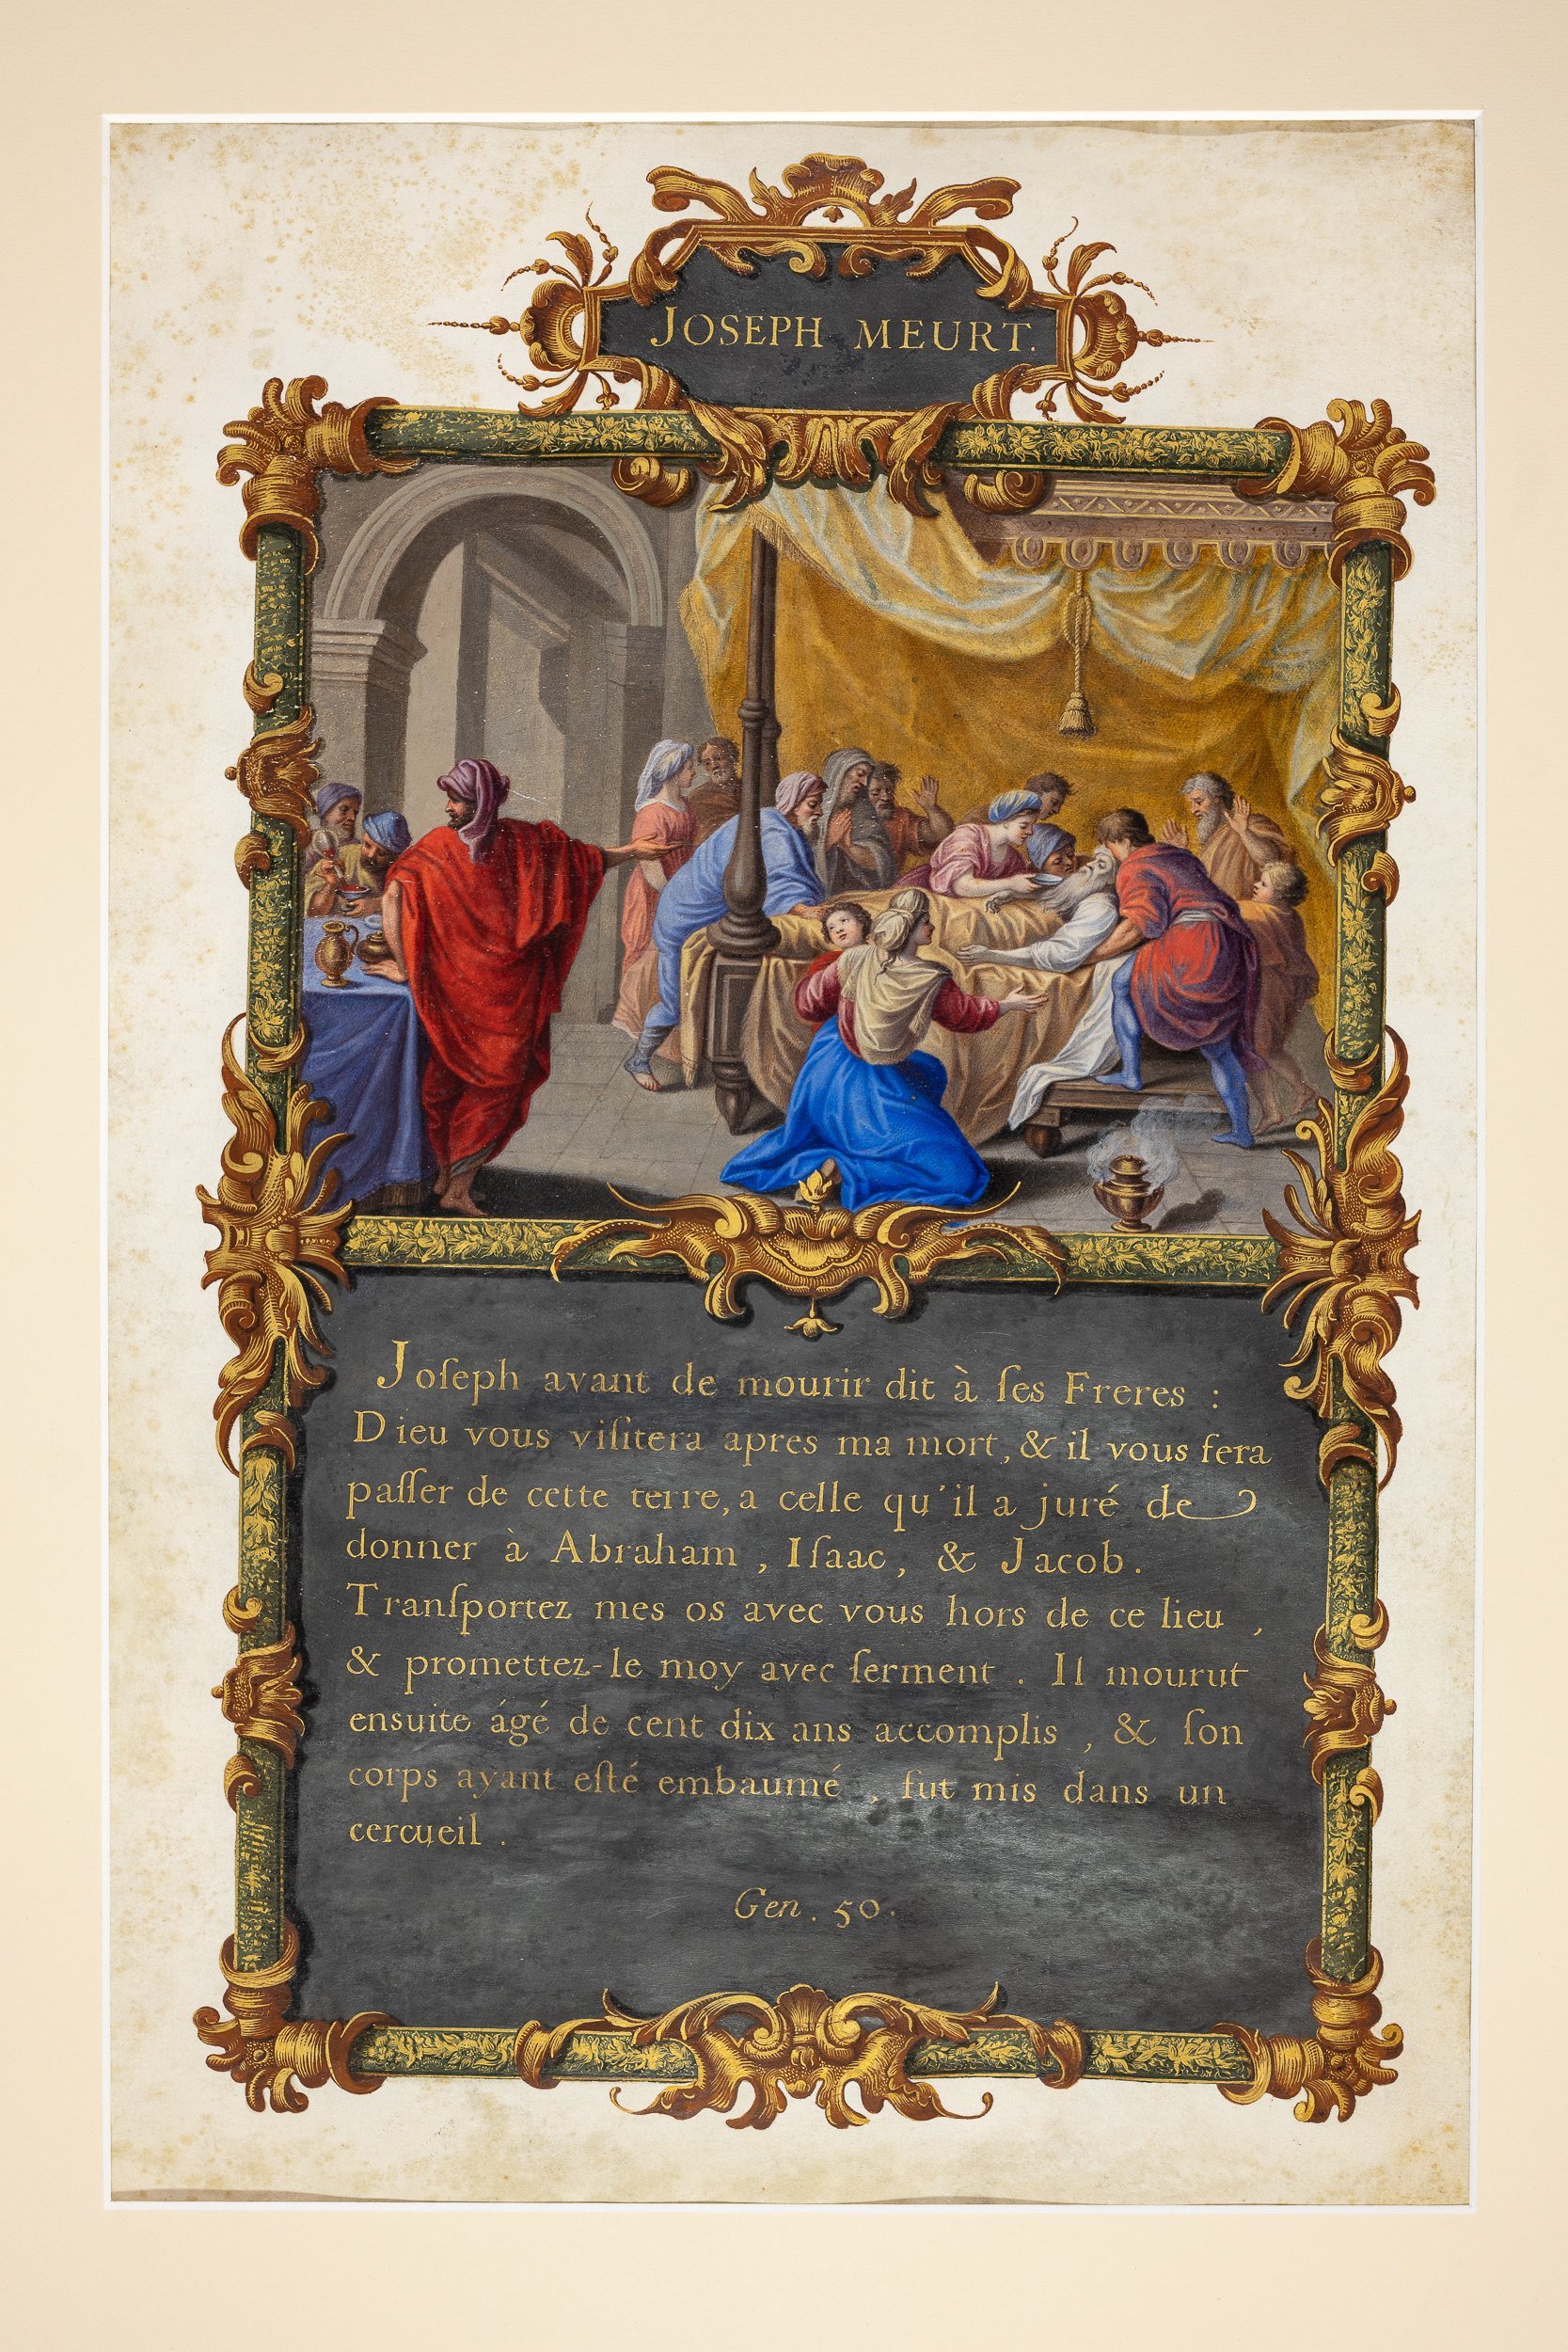 Joseph-in-Egypt-History-Illuminated-manuscript-painting-jean-joubert-sylvain-bonnet-anna-of-bavaria-baviere_22.jpg